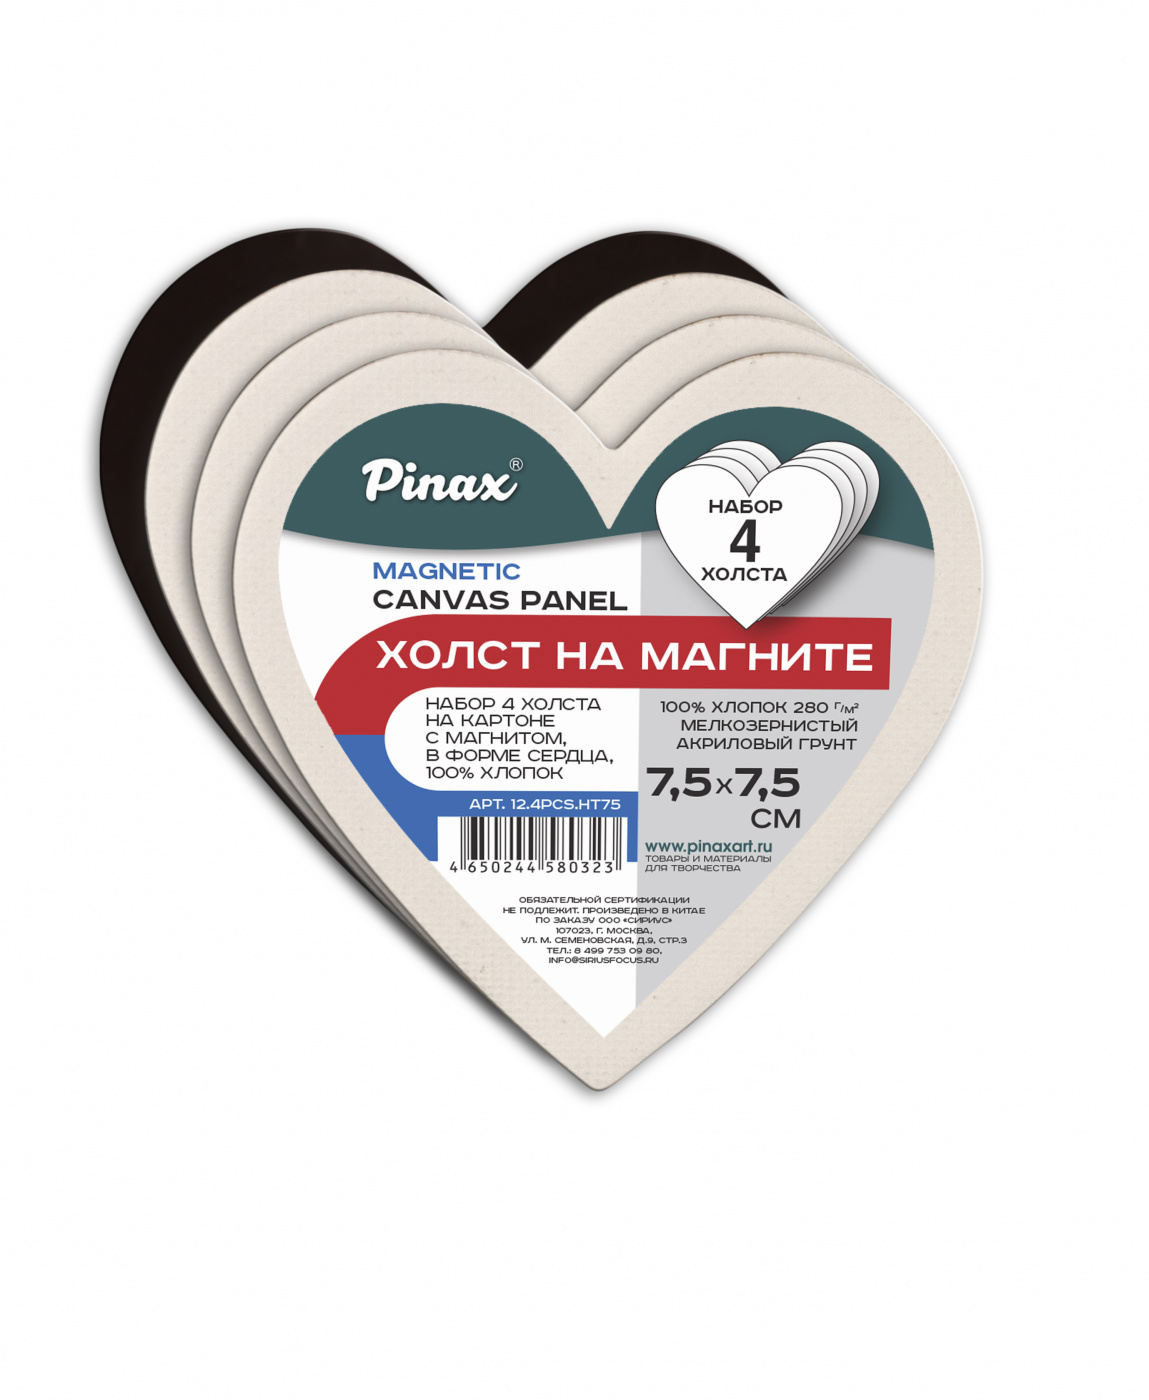 Набор холстов на картоне с магнитом Pinax 4 шт, хлопок 100%, в форме сердца 7,5 см маркеры на водной основе со стиралкой и магнитом набор 4 шт синий